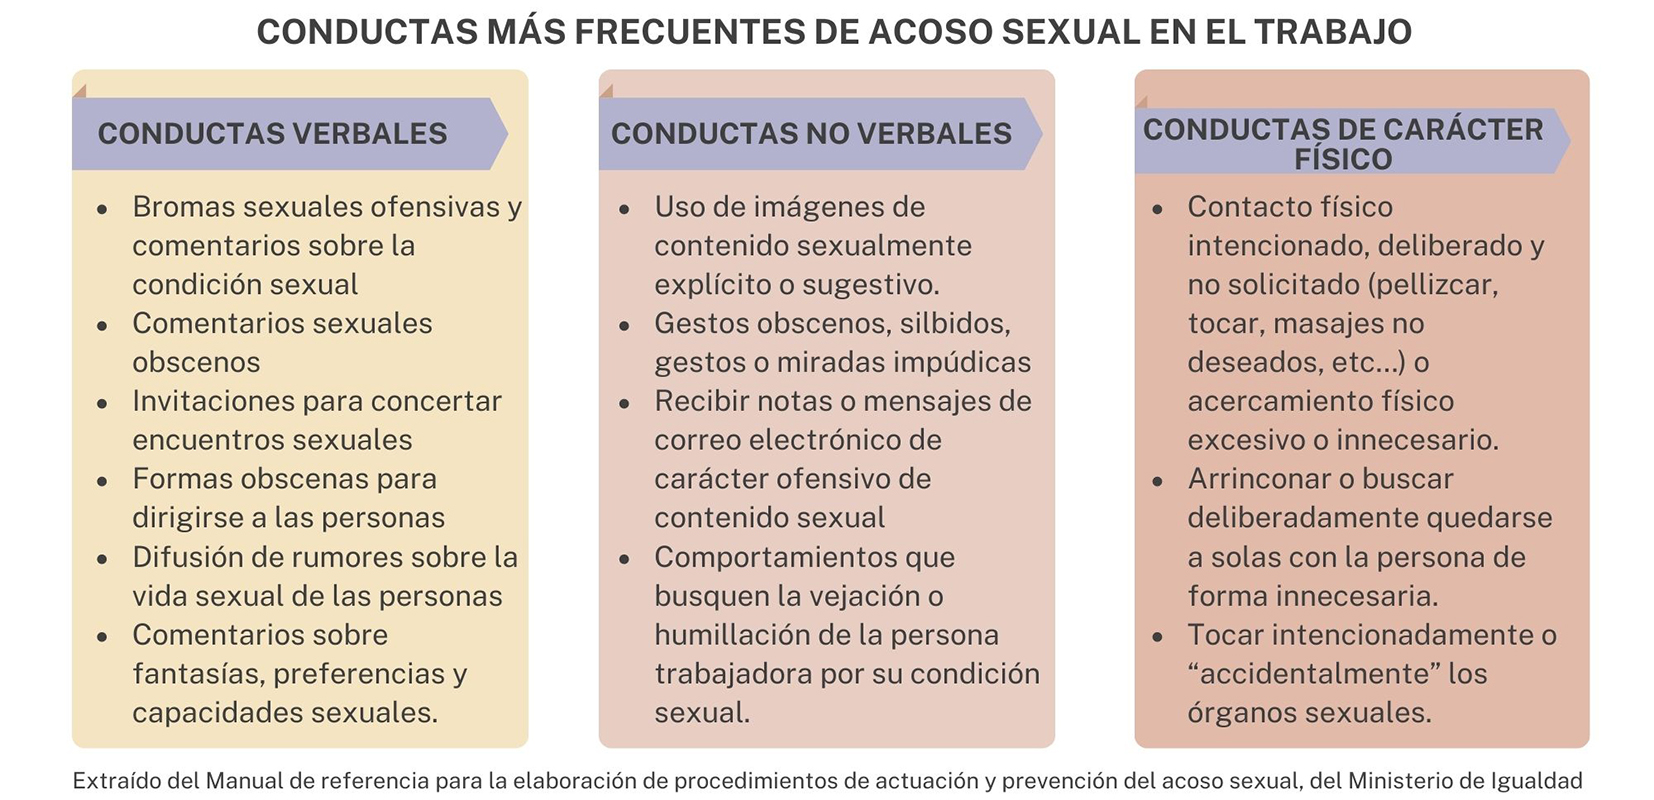 Conductas más frecuentes de acoso sexual en el trabajo según el Manual de referencia para la elaboración de procedimientos de actuación y prevención del acoso sexual, del Ministerio de Igualdad